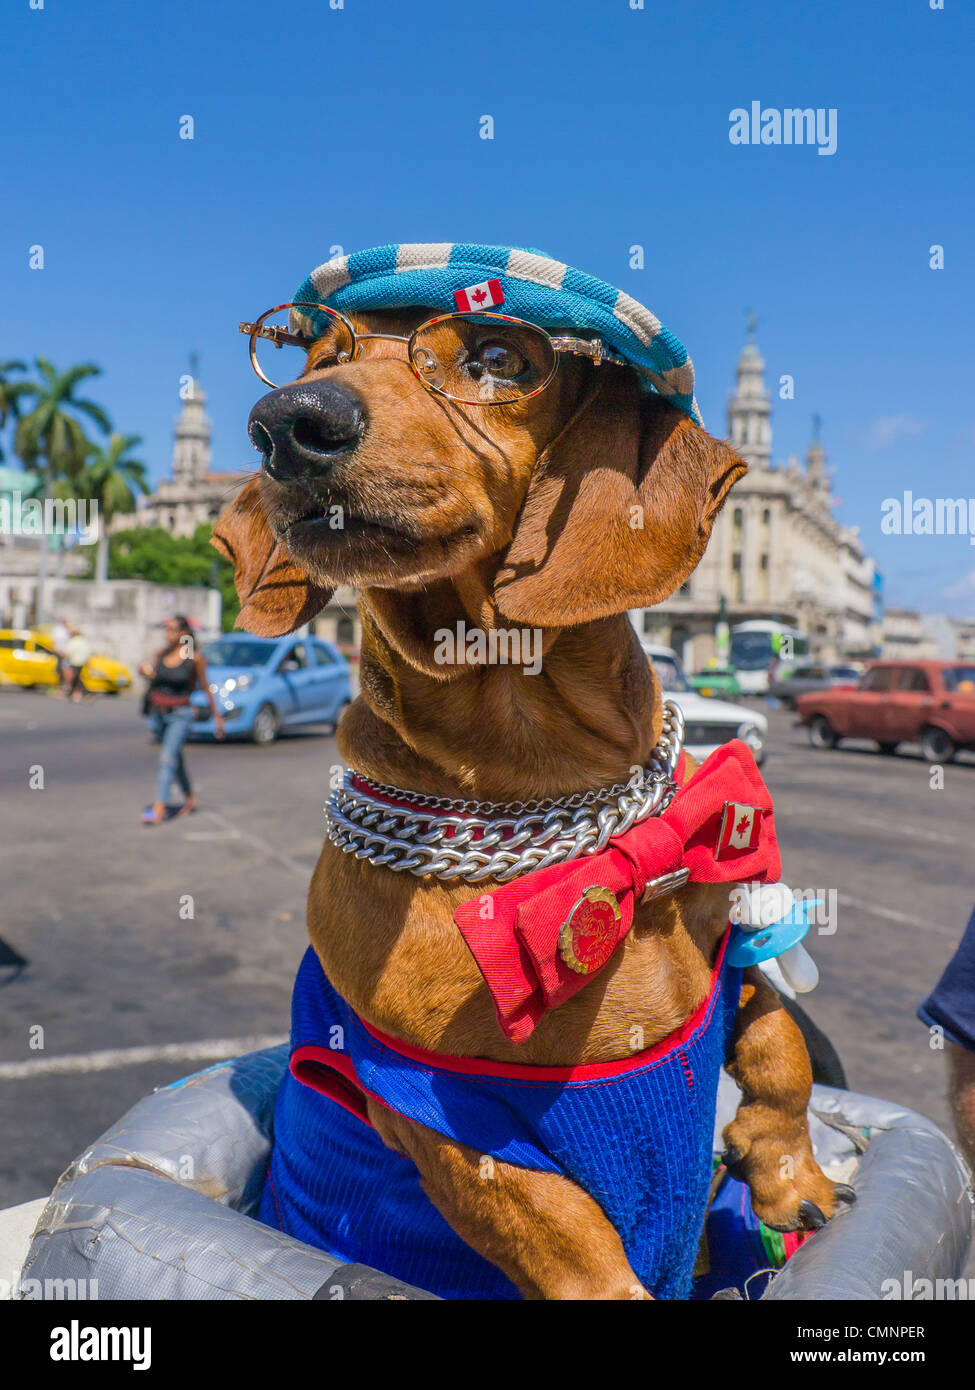 Ein Dackel Hund ist in einem blau-weißen Hut, rote Fliege und Gläser als Attraktion für Touristen in Havanna, Kuba gekleidet. Stockfoto